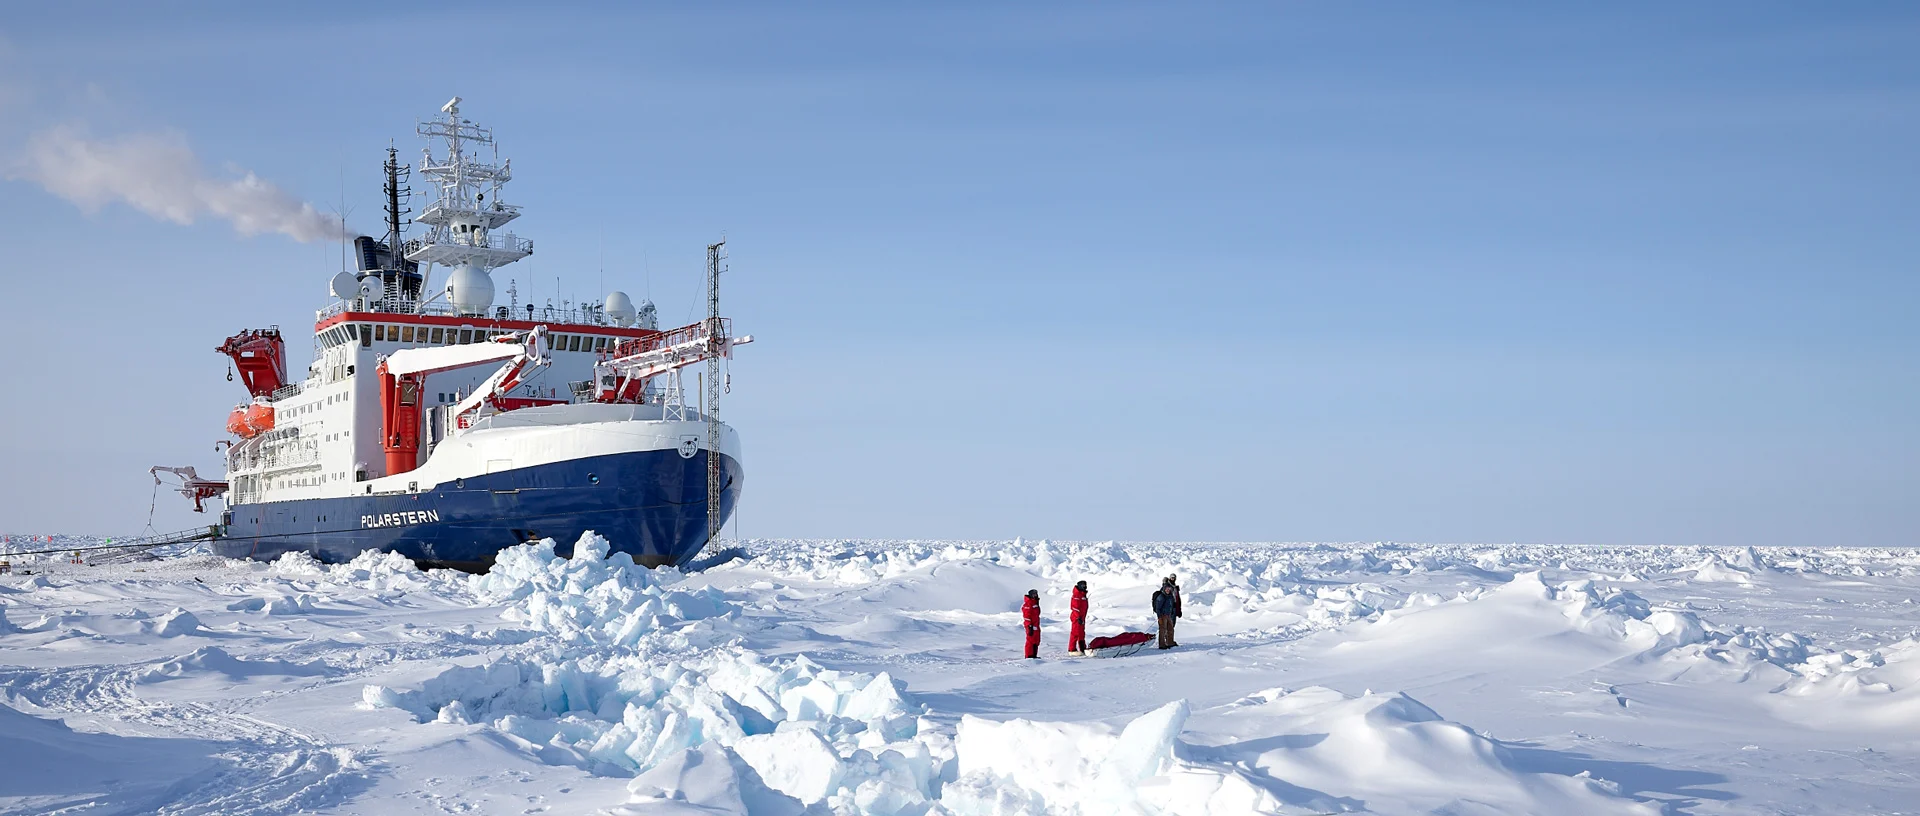 Foto dea Forschungsschiffs "Polarstern" von schräg vorne aufgenommen, während es einen Weg durch die antarktischen Eisschollen bricht. 